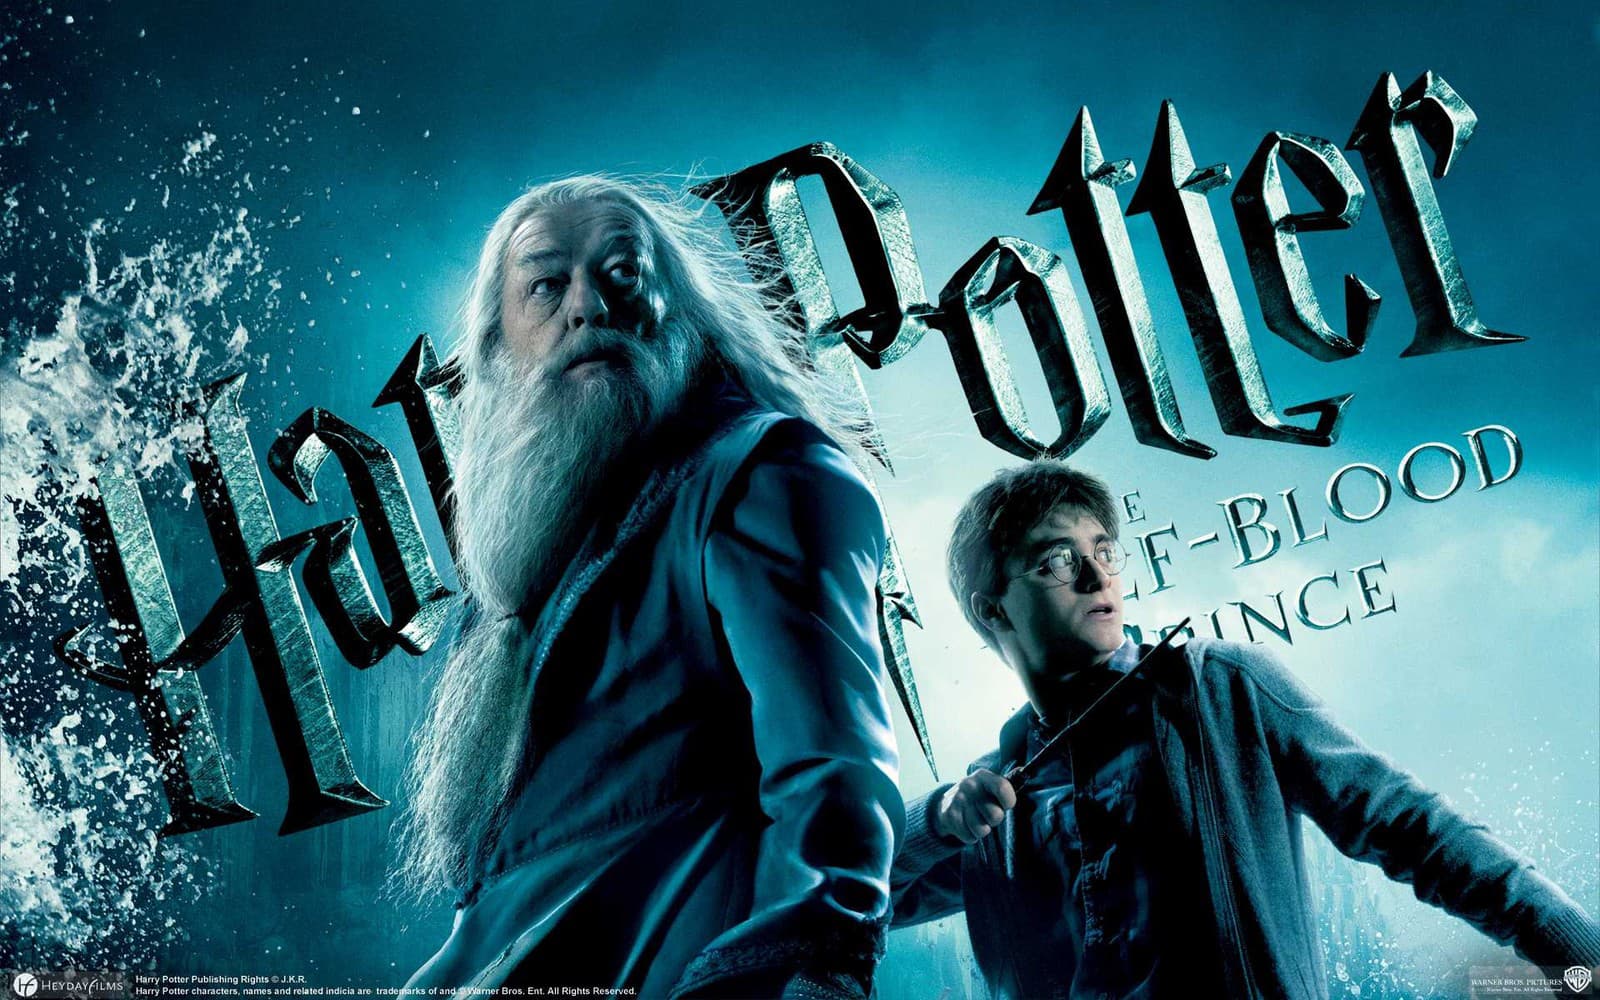 Harry Potter a Polovičný